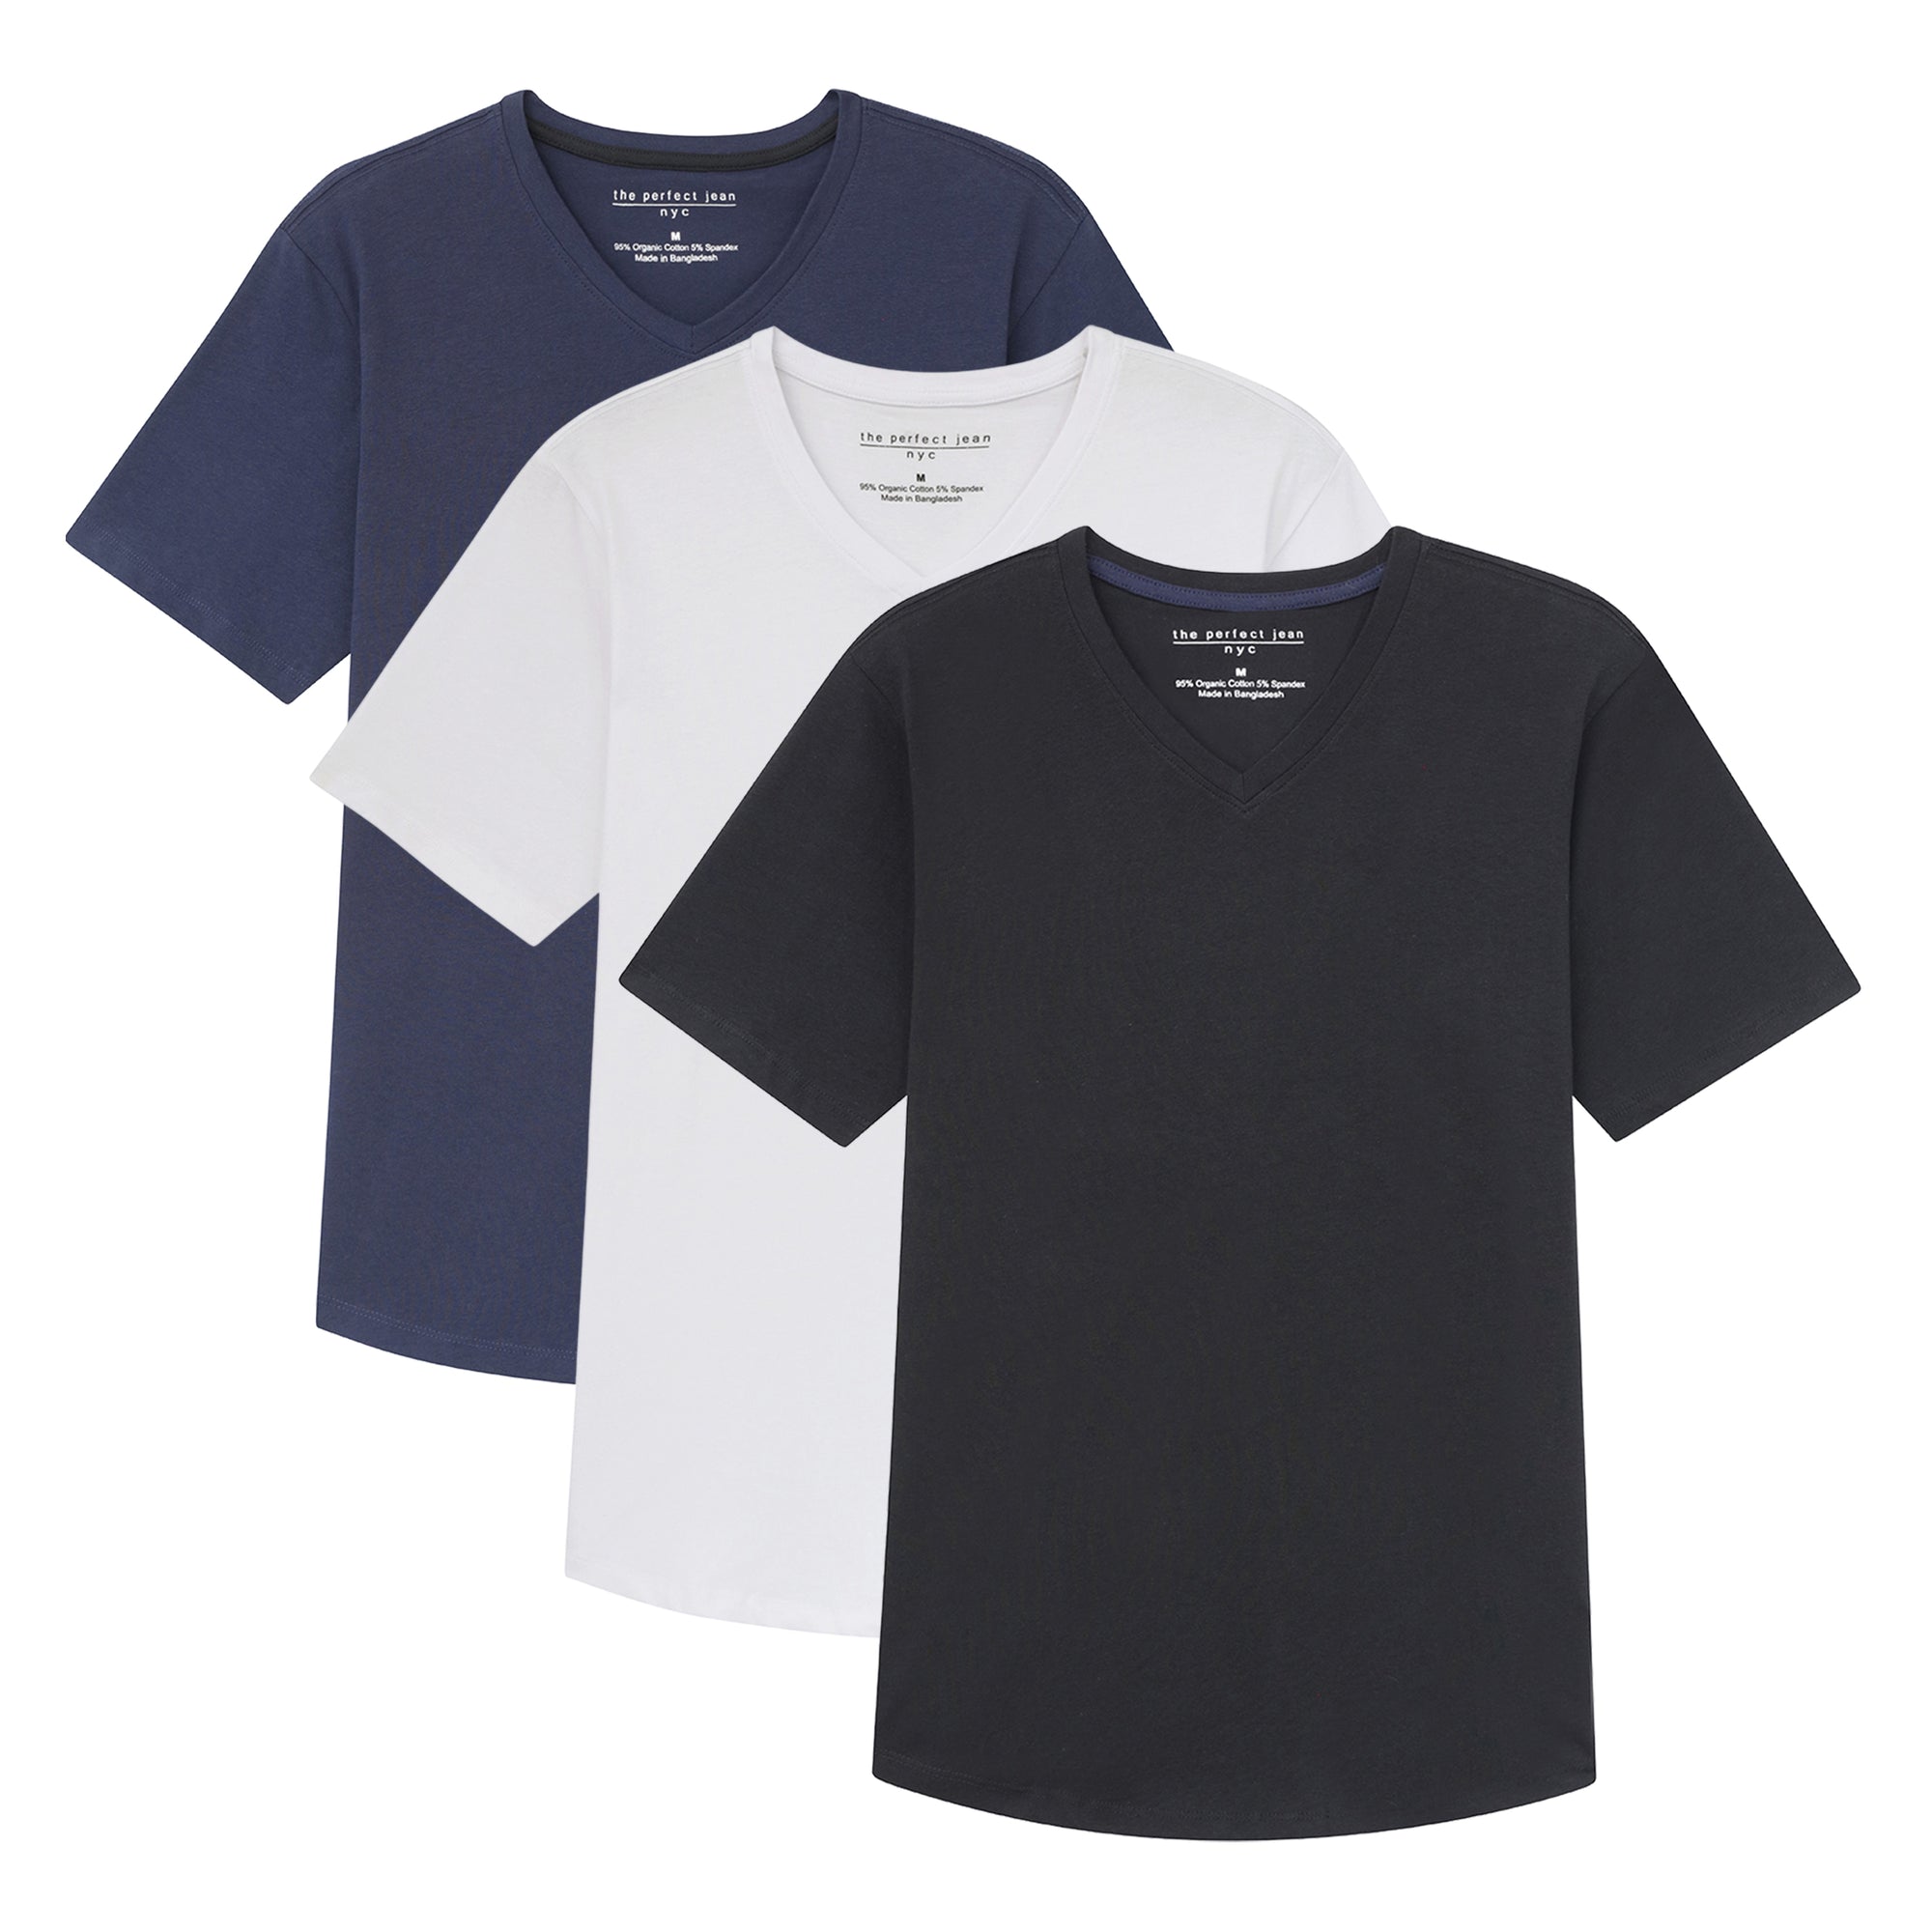 Organic V-Neck T-Shirt 3 Pack / The "Basic" Basic